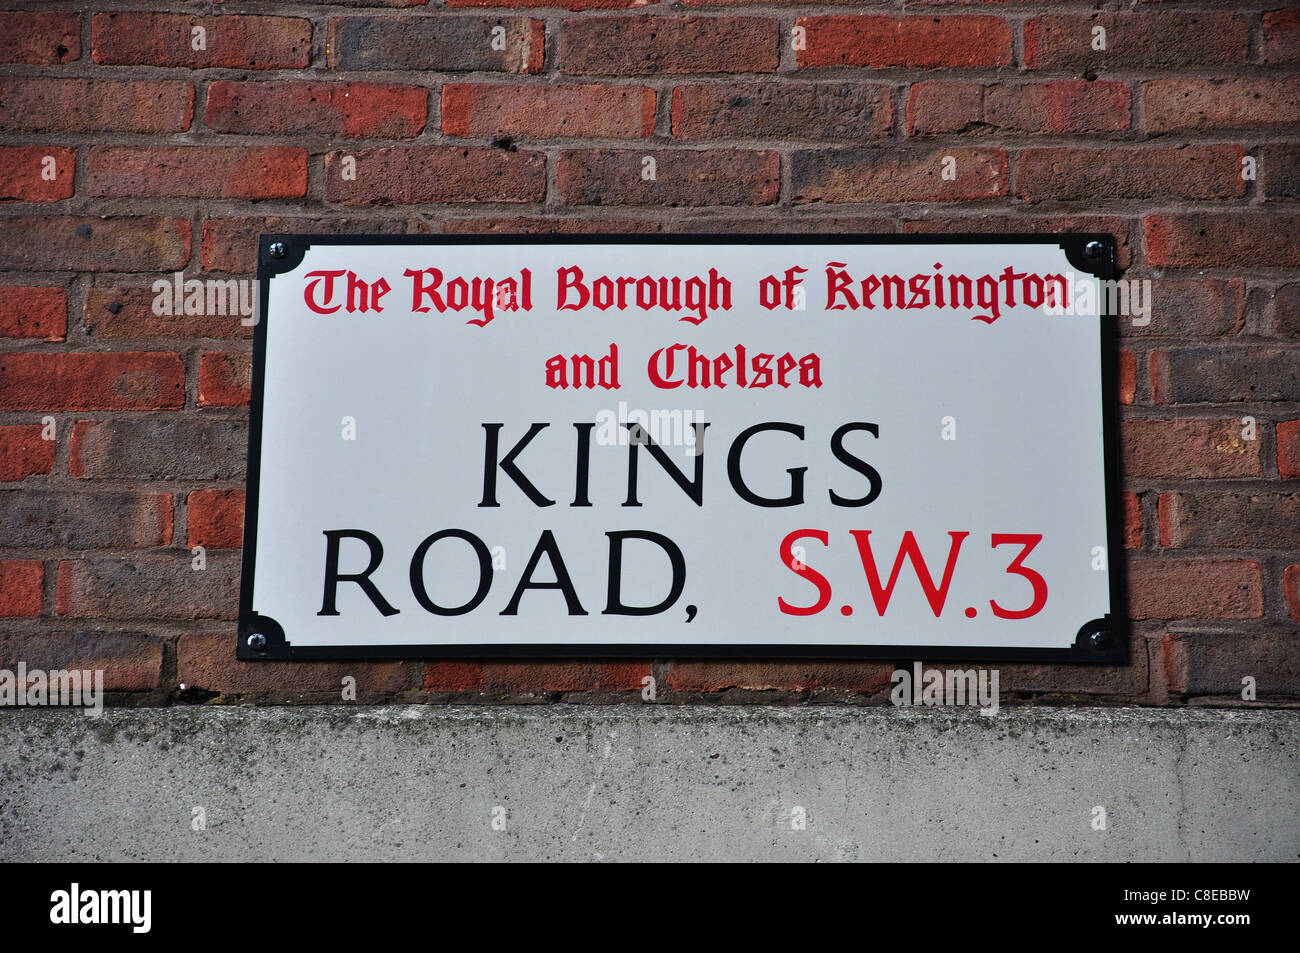 Kings Road sign, King's Road, Chelsea, le Royal Borough de Kensington et Chelsea, London, Greater London, Angleterre, Royaume-Uni Banque D'Images